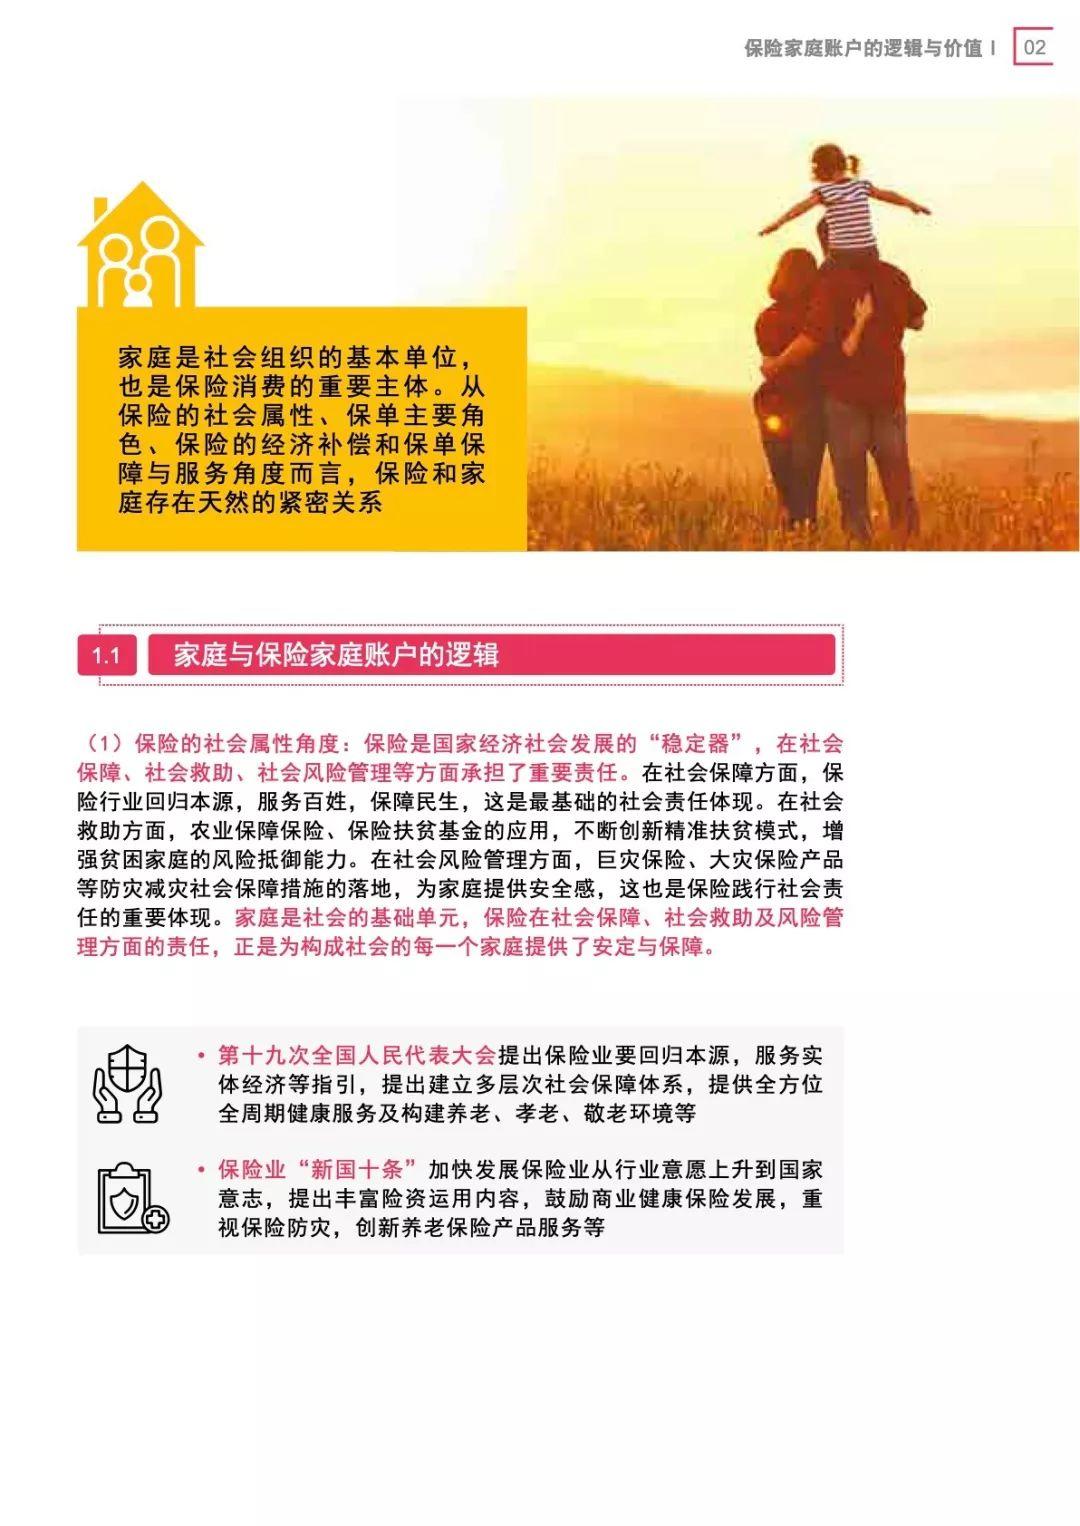 2019中国保险家庭账户白皮书